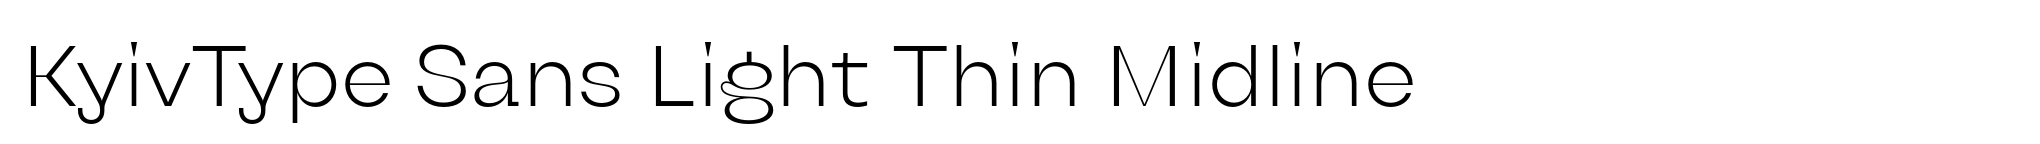 KyivType Sans Light Thin Midline image